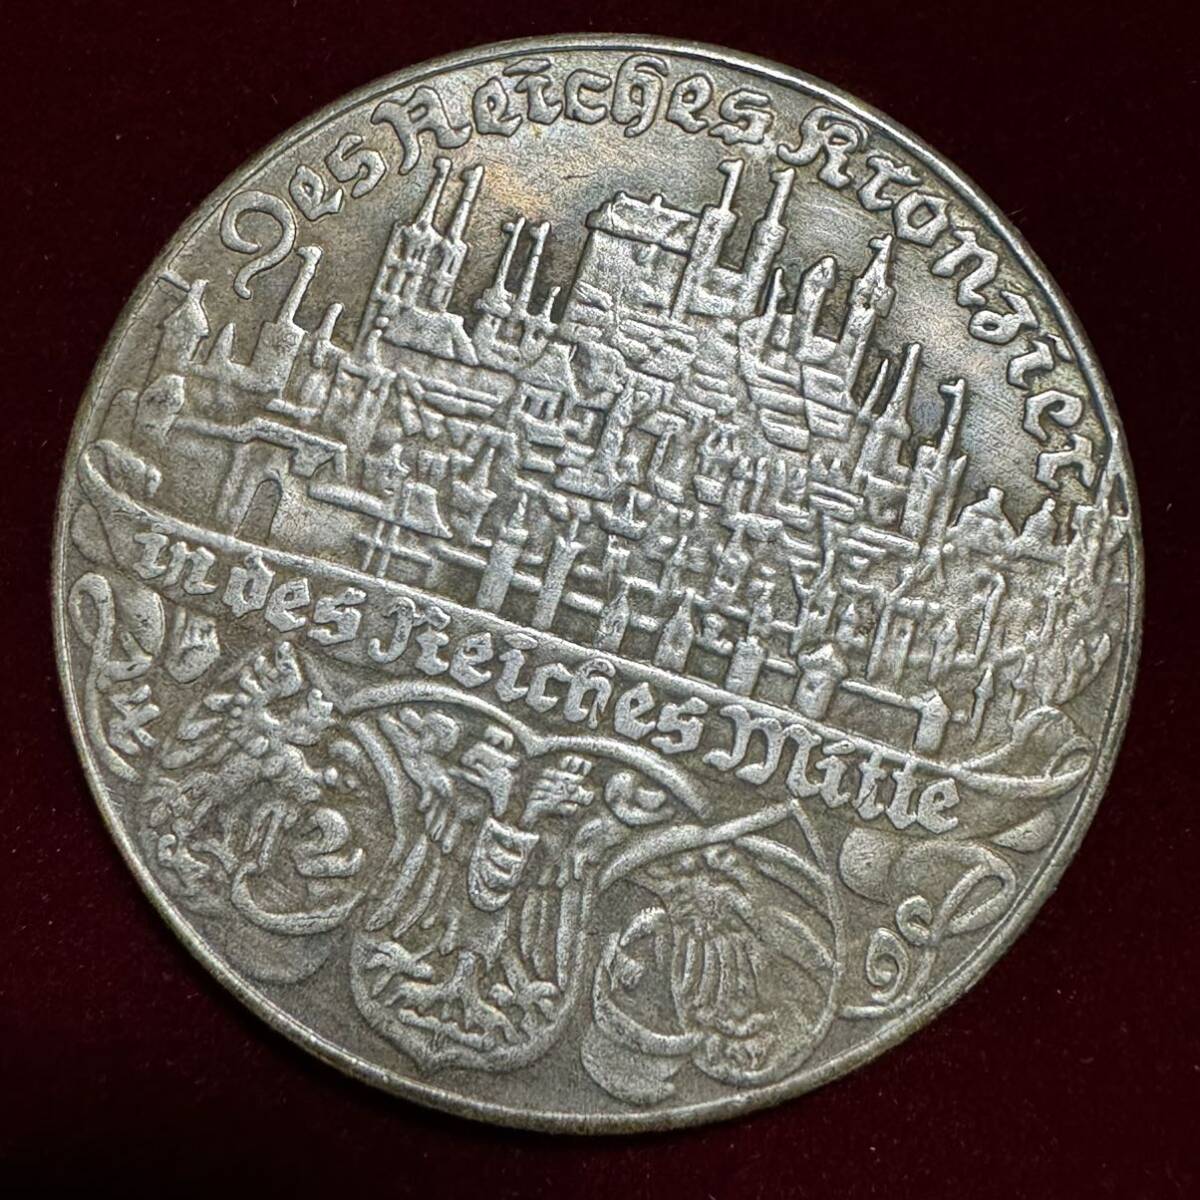 ドイツ ニュルンベルクの街 硬貨 古銭 1938年 オーストリア併合 剣 帝国の鷲 紋章 クラウン 花輪 コイン 銀貨 外国古銭 海外硬貨の画像2